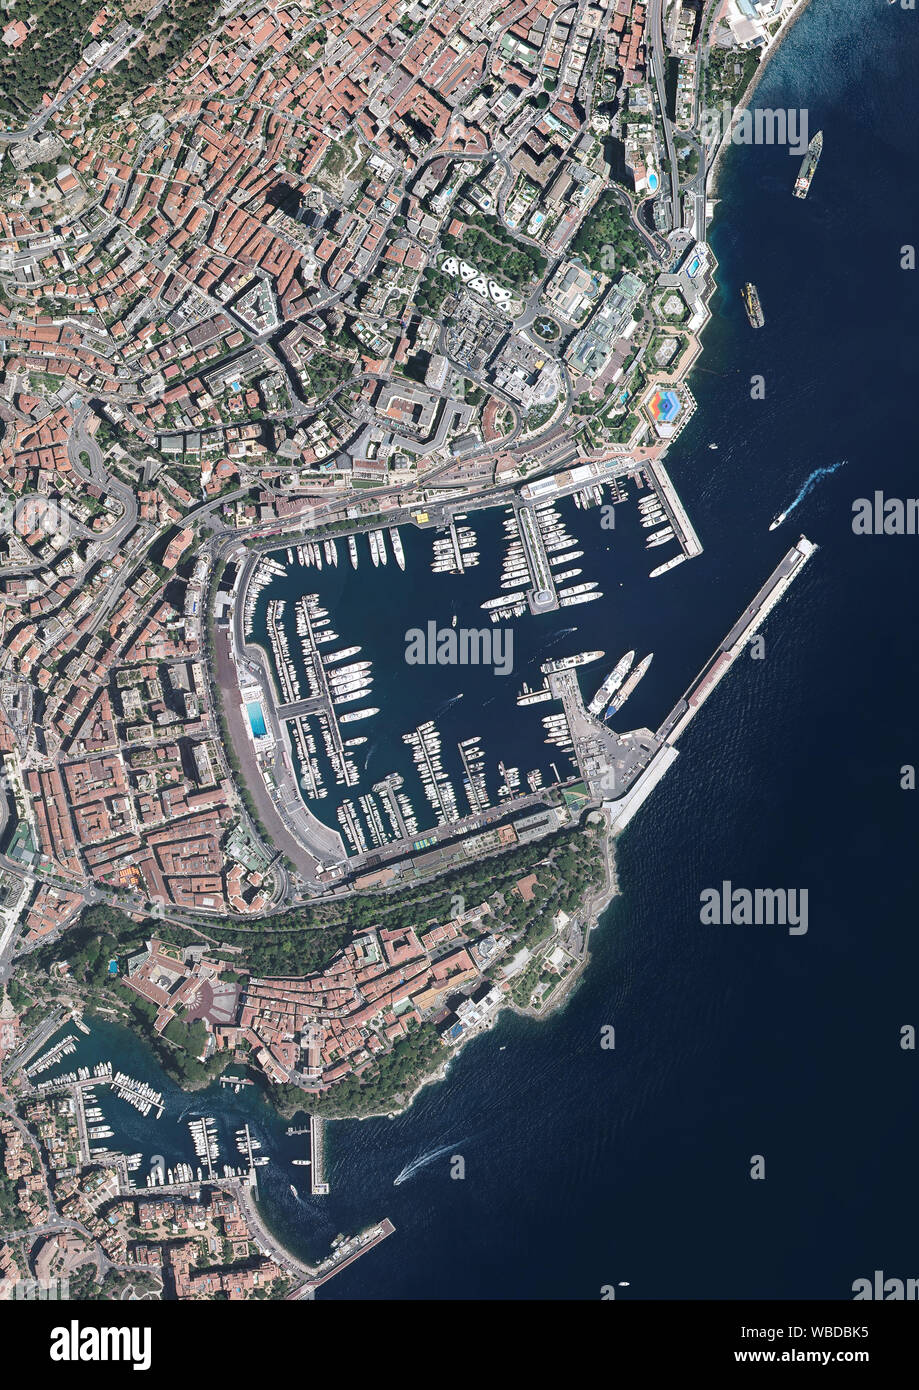 La fotografía aérea de la ciudad de Mónaco y el Puerto Hércules. Imagen tomada en 2017. Foto de stock